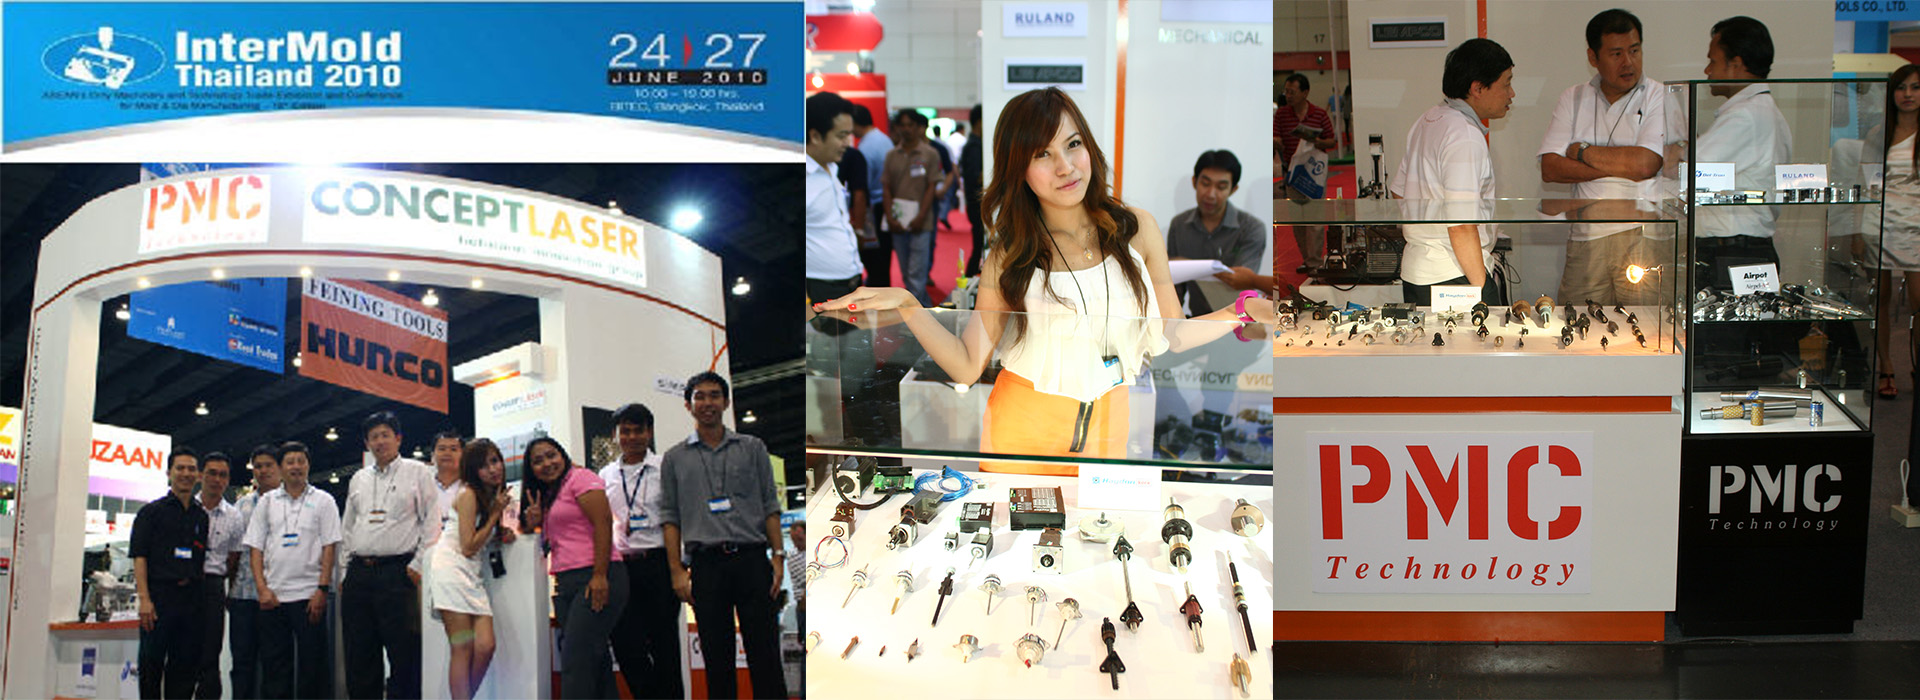 PMC Exhibition InterMold Thailand 2010